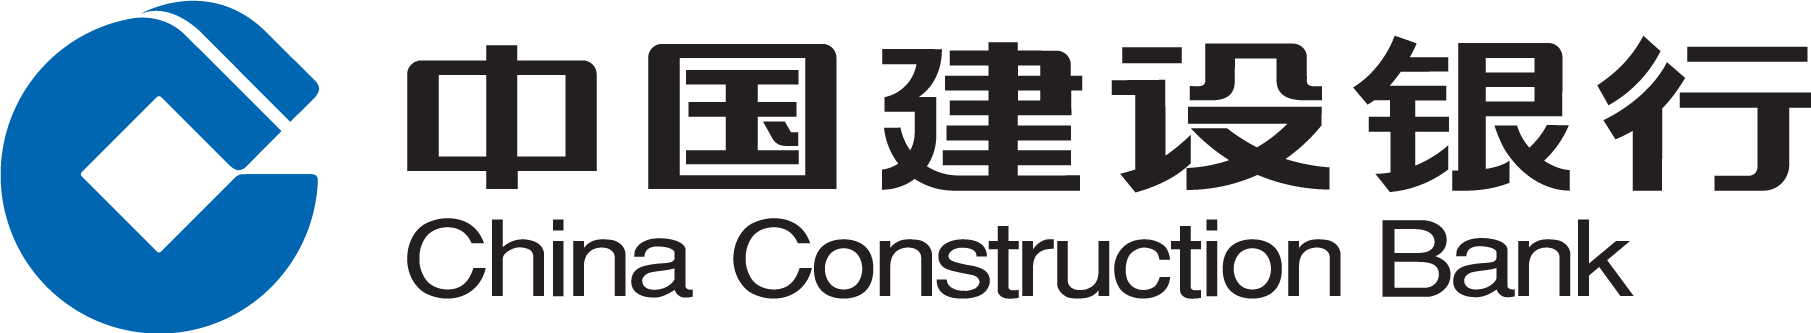 China Construction Bank лого. Китайский строительный банк. China Construction Bank Corp. Строительный банк Китая China Construction Bank CCB.